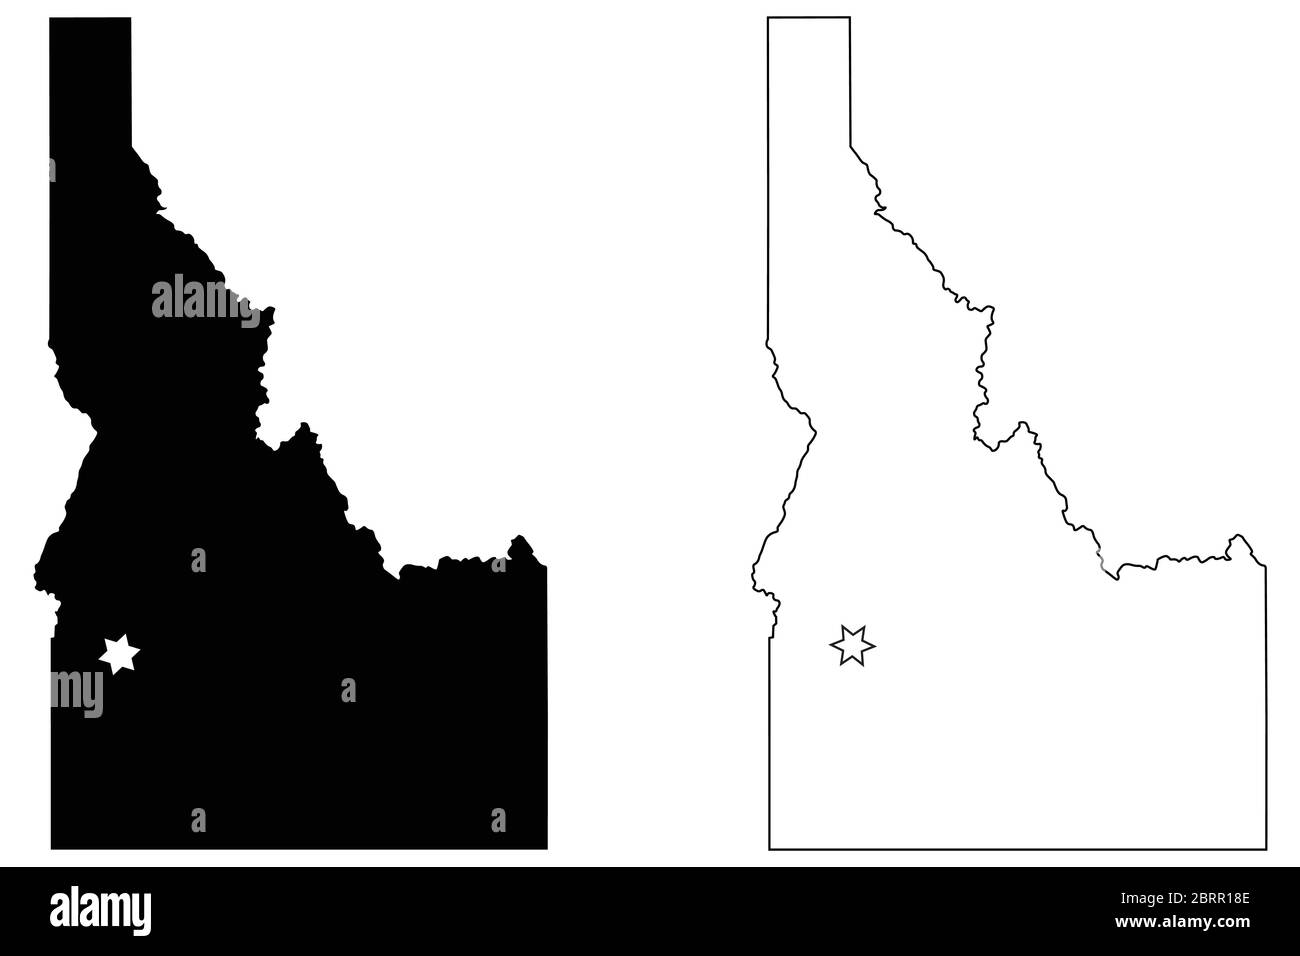 Idaho ID State Map USA mit Capital City Star in Boise. Schwarze Silhouette und Umriss isoliert auf weißem Hintergrund. EPS-Vektor Stock Vektor